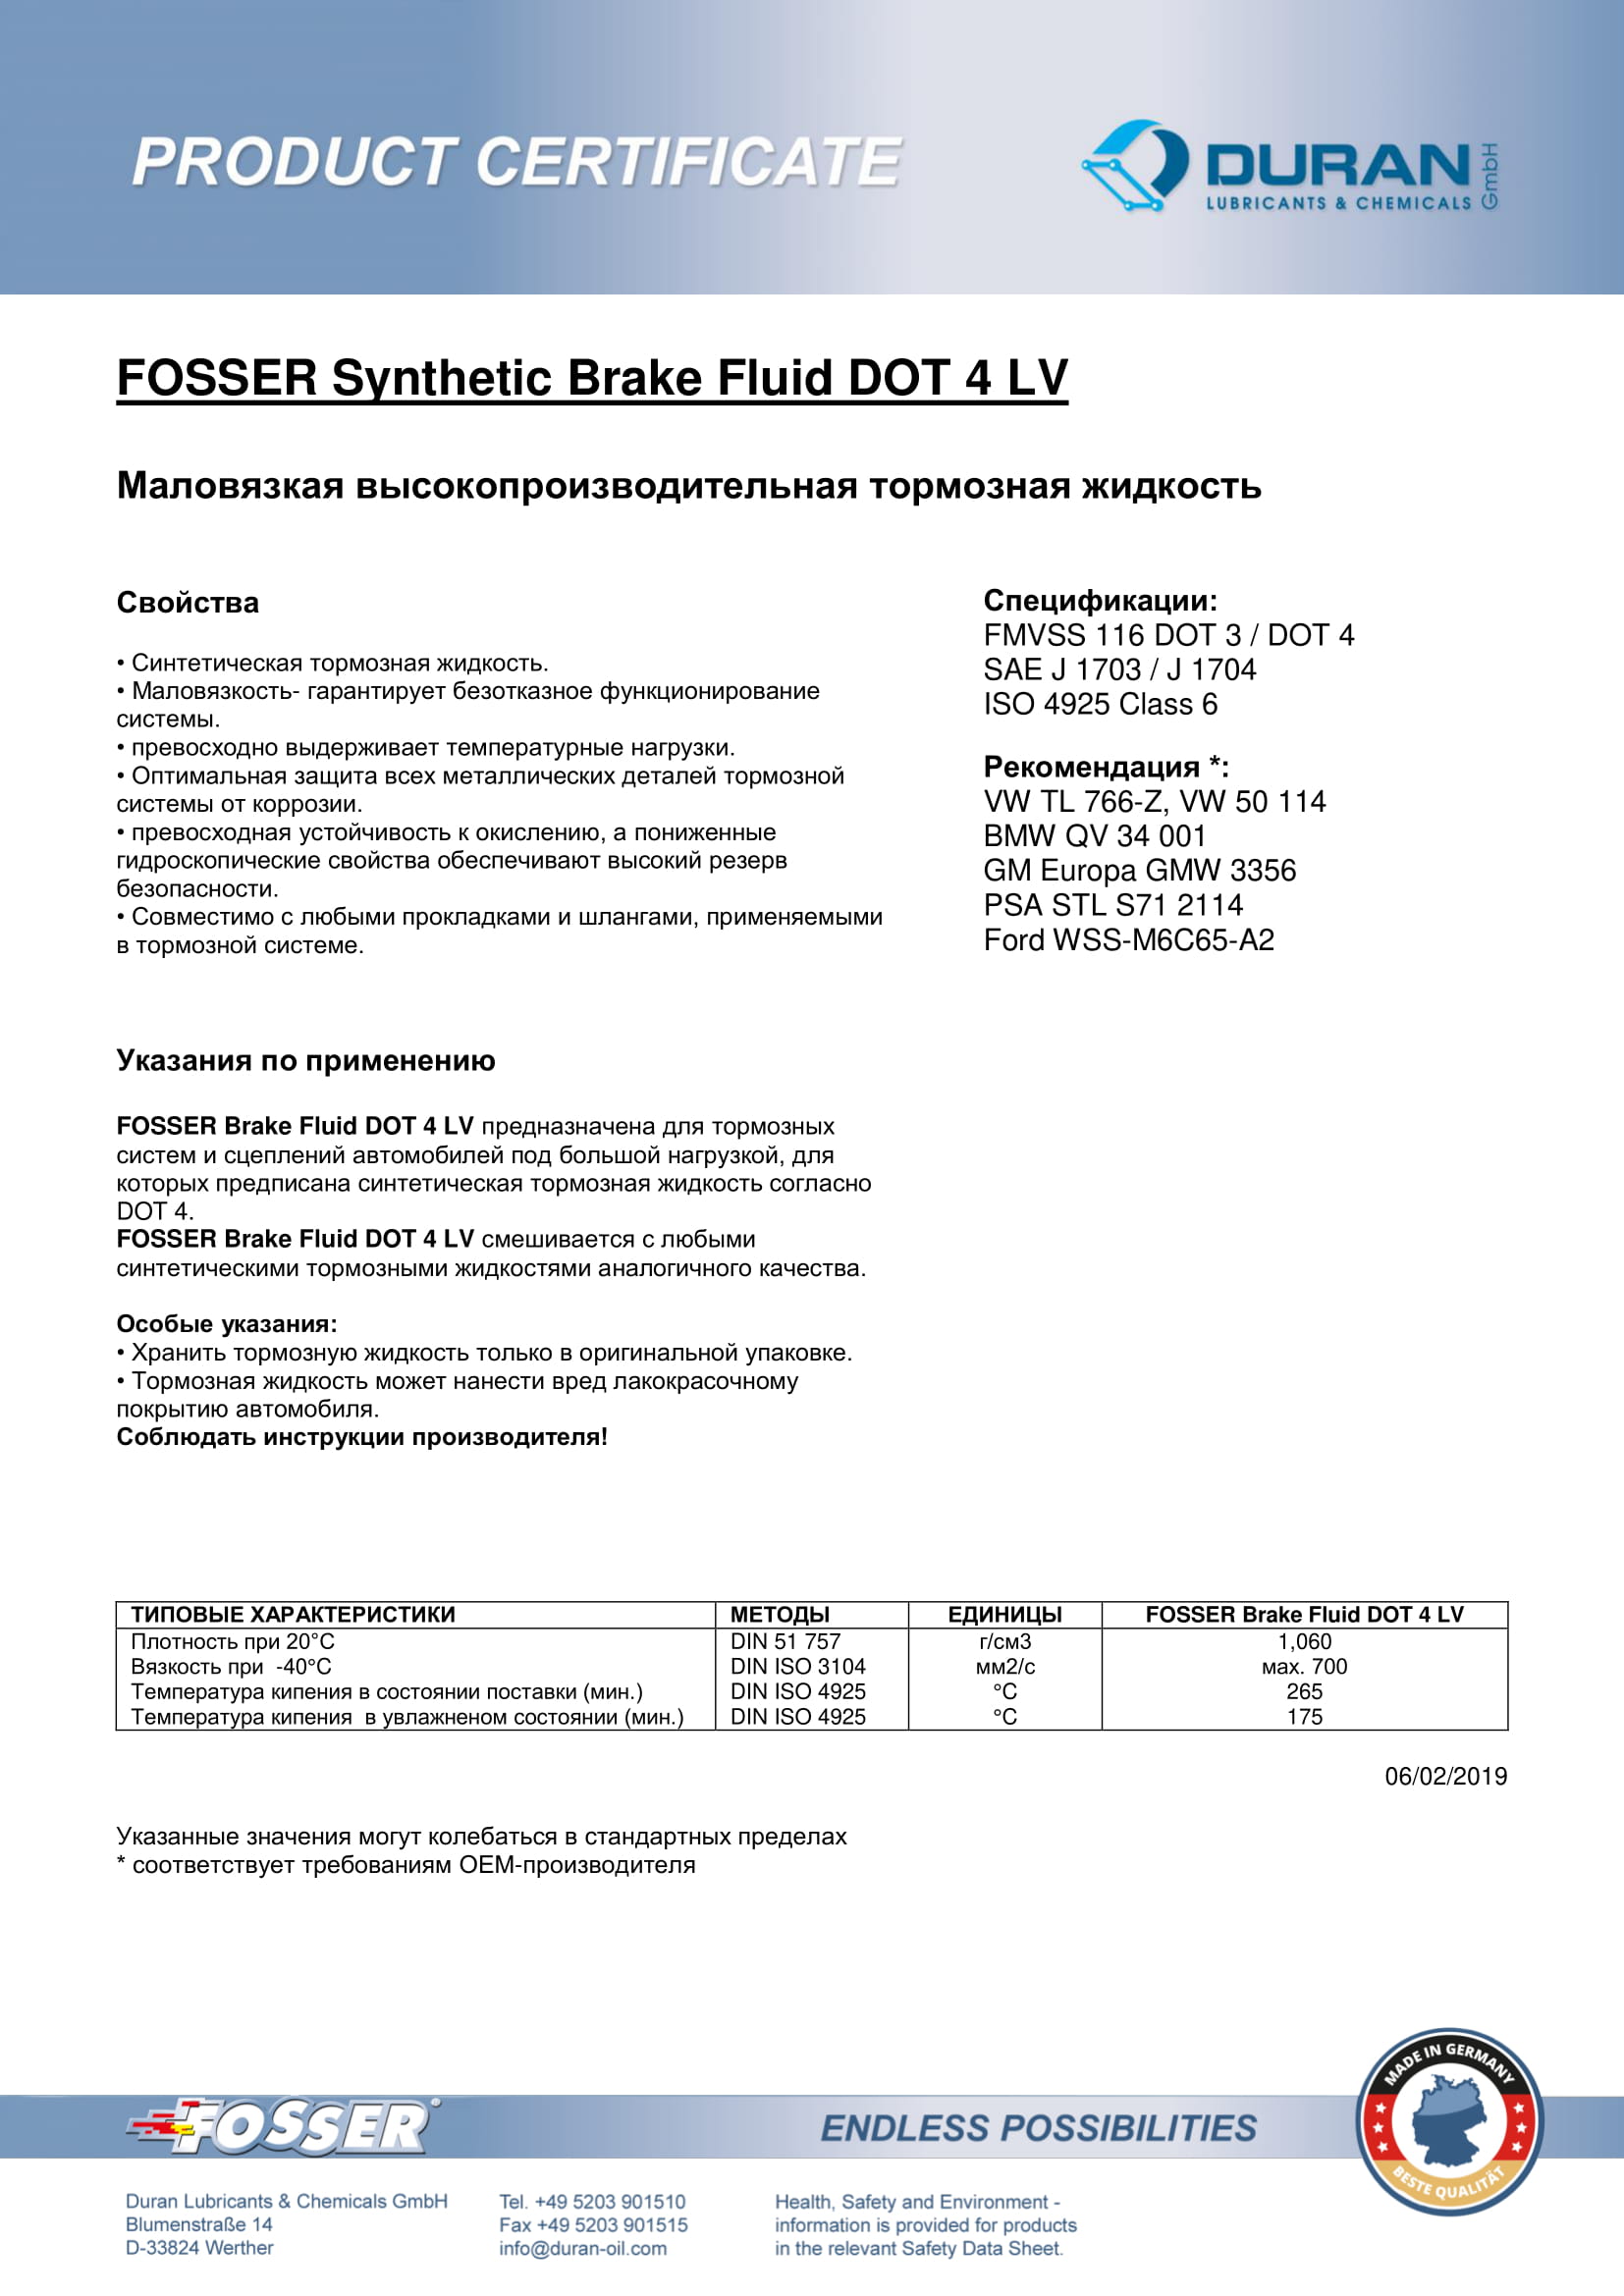 Товарный сертификат Fosser Brake Fluid Dot 4 LV тормозная жидкость